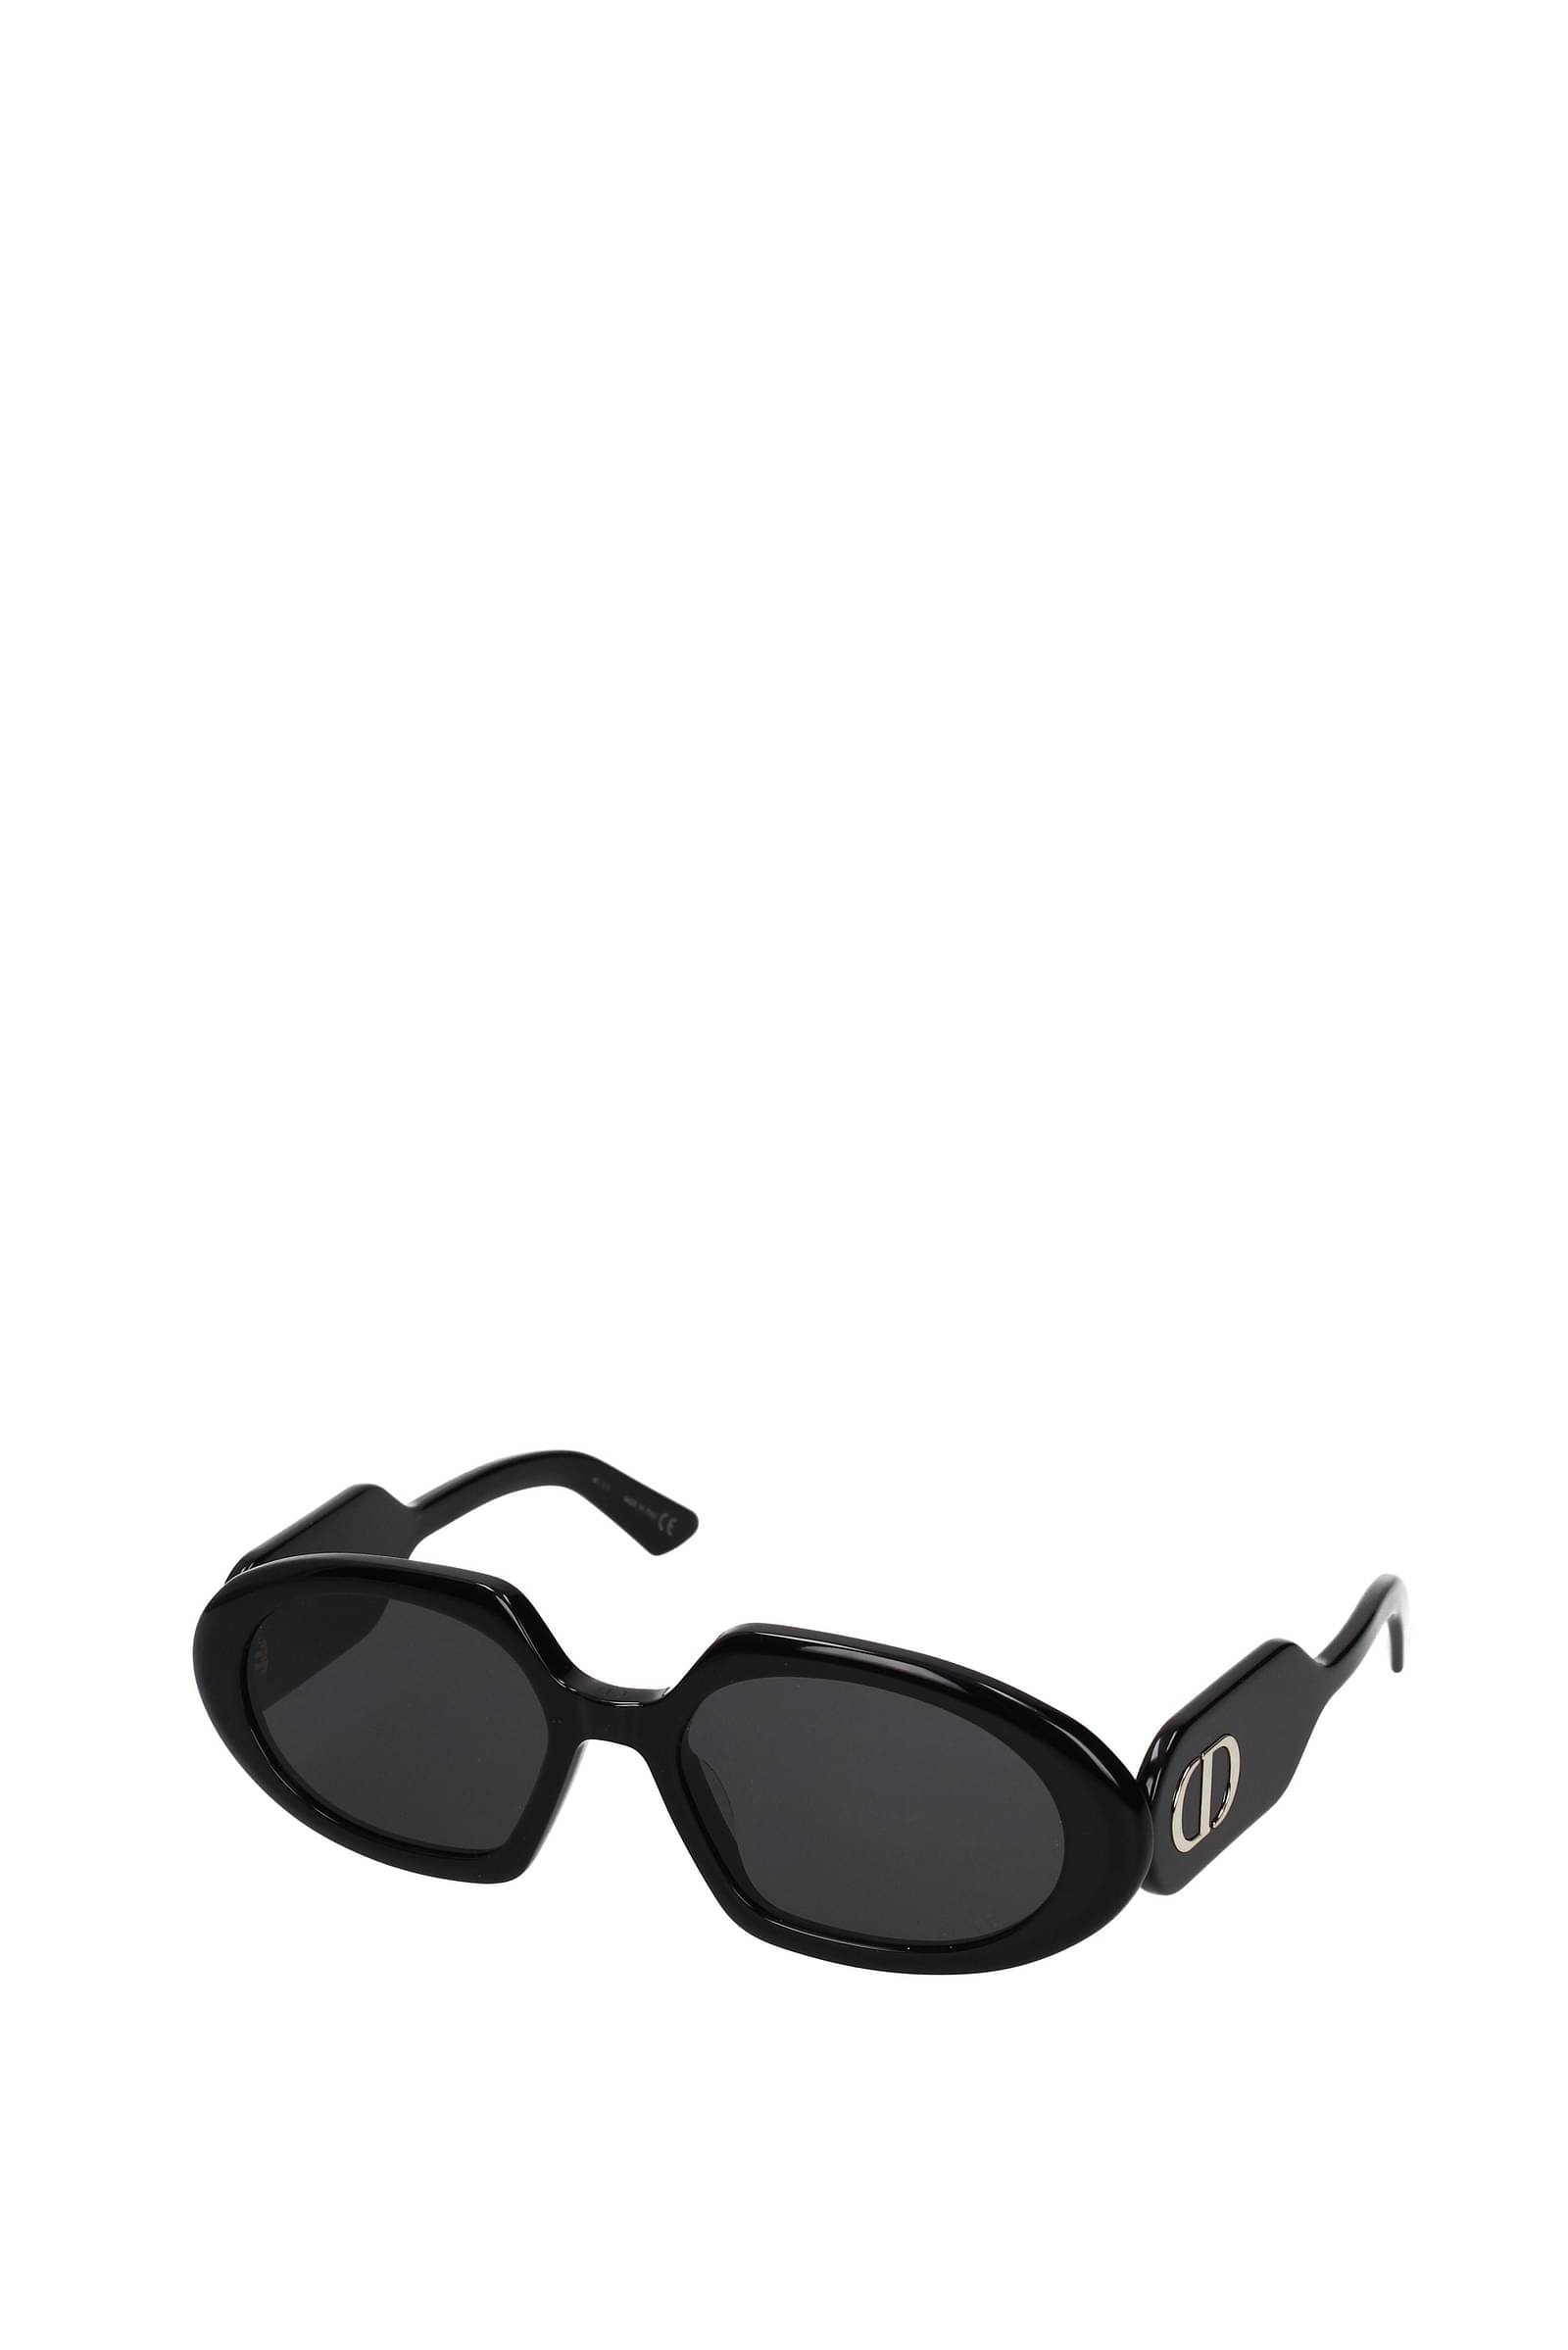 Christian Dior Sunglasses Women BOBYR2UXRNERO Acetate Black 173,25€